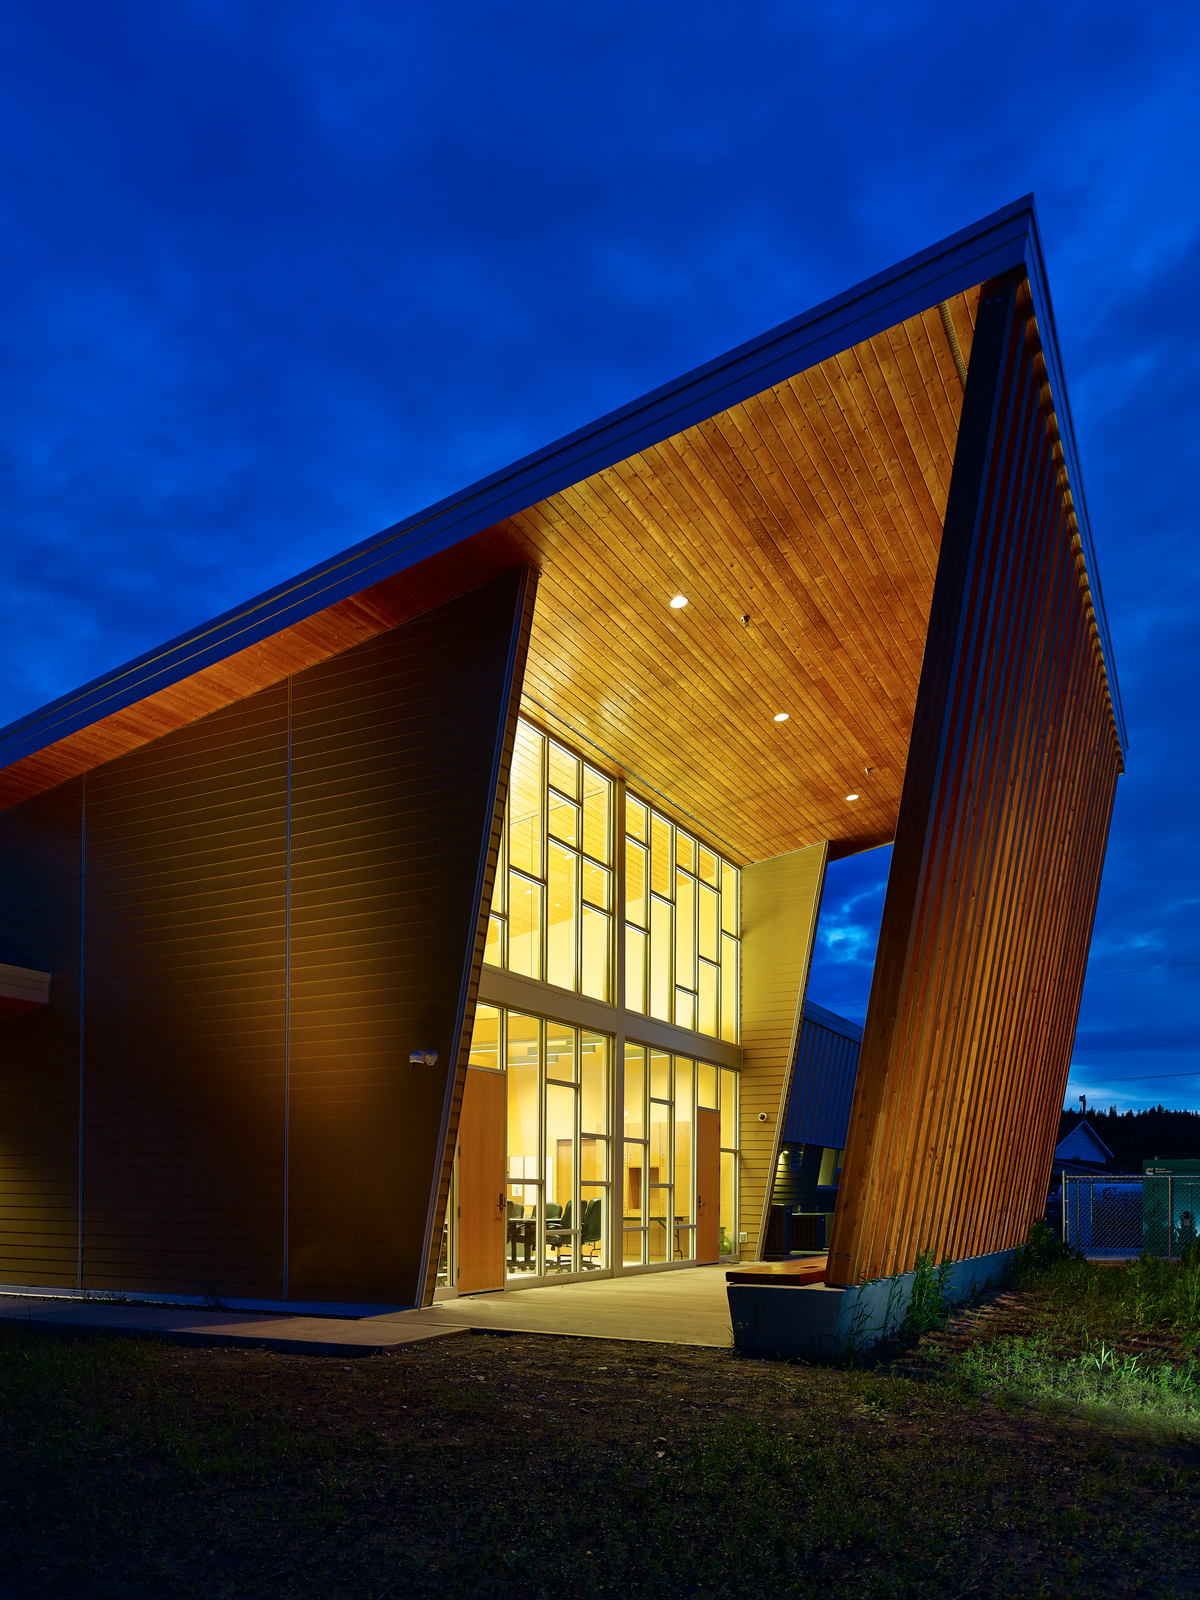 YunesitIn健康中心入口的外部夜景显示了广泛的木材和玻璃的使用，包括木板壁板和胶合木(胶合木)柱支撑预制木材屋顶桁架